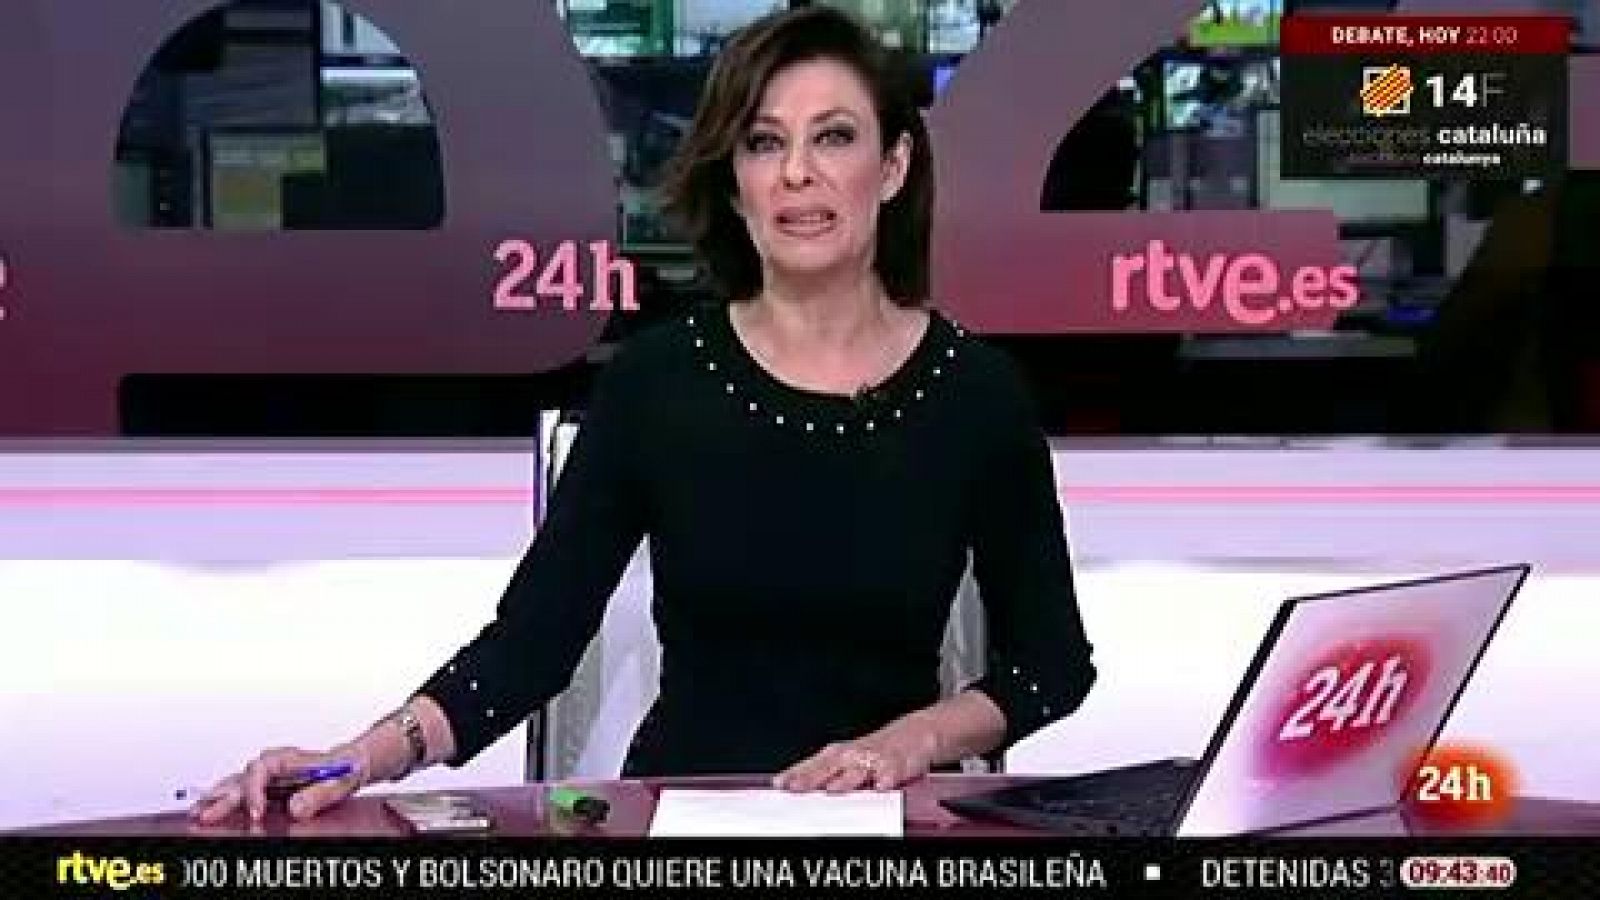 Debate electoral con los principales candidatos del 14F, este domingo en RTVE